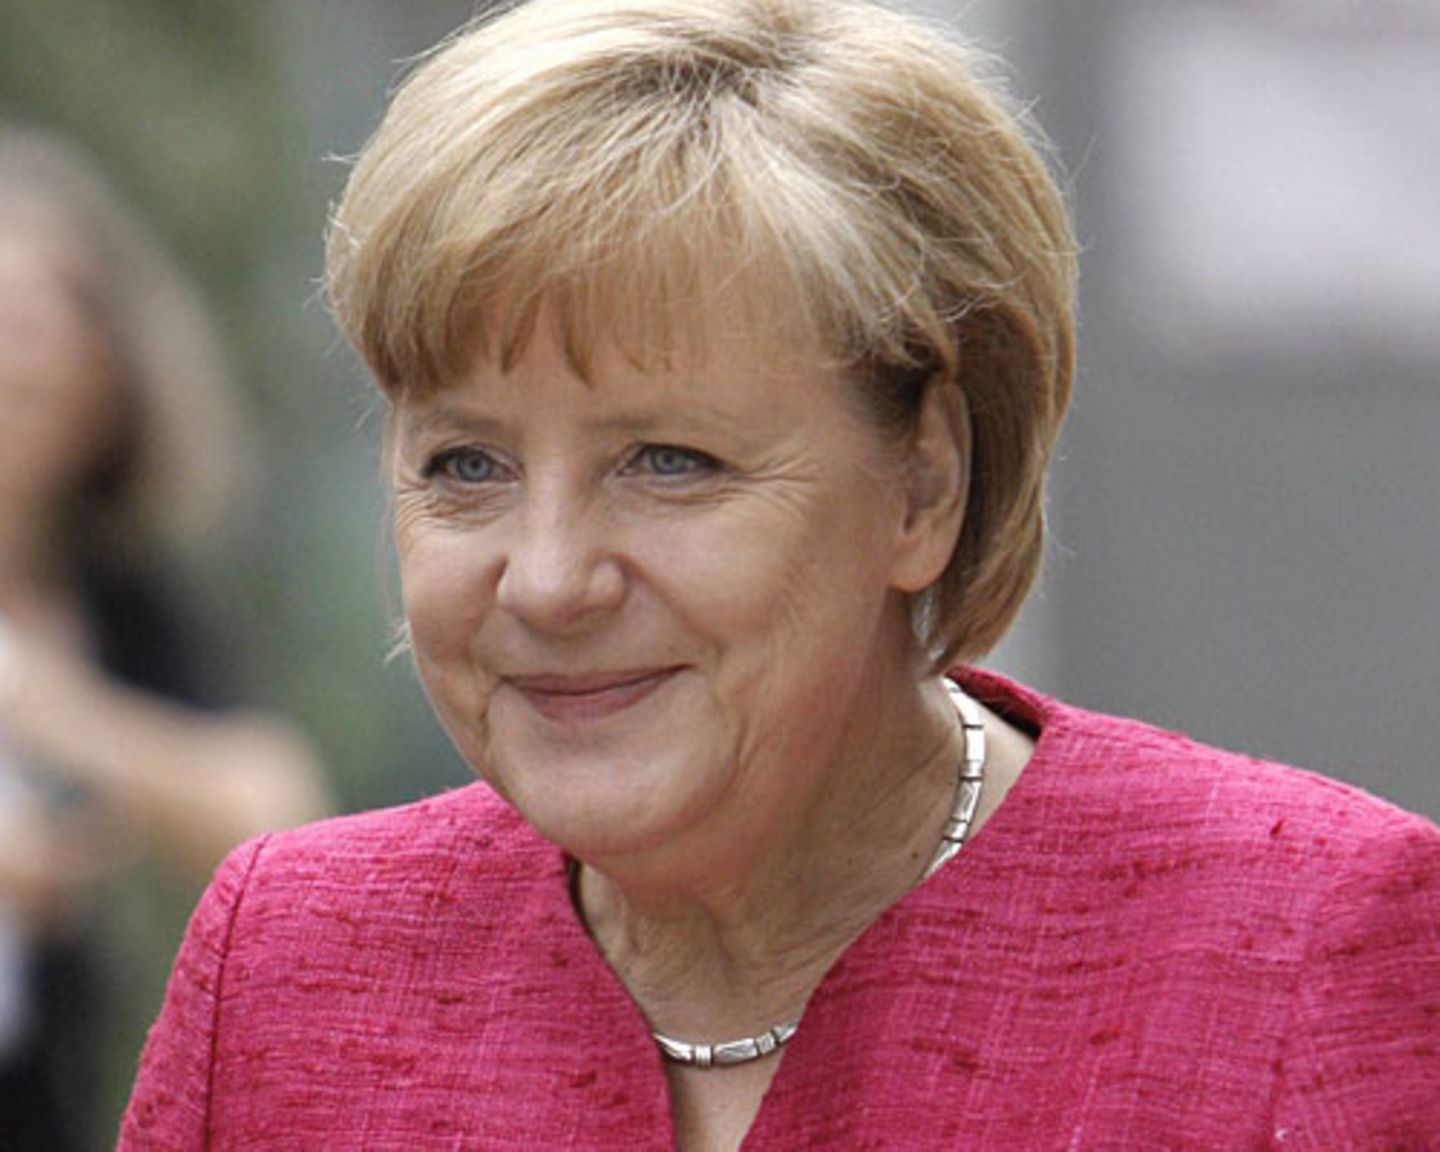 Happy Birthday, Angela Merkel! Die Kanzlerin wird am 17. Juli 59 Jahre alt. Viel Zeit zum Feiern wird sie allerdings nicht haben. Wahlkampf, NSA-Skandal, Euro-Krise. Der Terminkalender ist voll und der Druck auf Angela Merkel hoch. Wir nehmen uns jedoch ein wenig Zeit, um einmal auf die Stationen ihres Lebens zu schauen. Angefangen mit ihrer Kindheit. Mehr bei BRIGITTE.de: Angela Merkel: Fünf Gründe für ihren Erfolg Angela Merkel bei BRIGITTE LIVE Cover Girl Merkel: Wie die Welt sie sieht